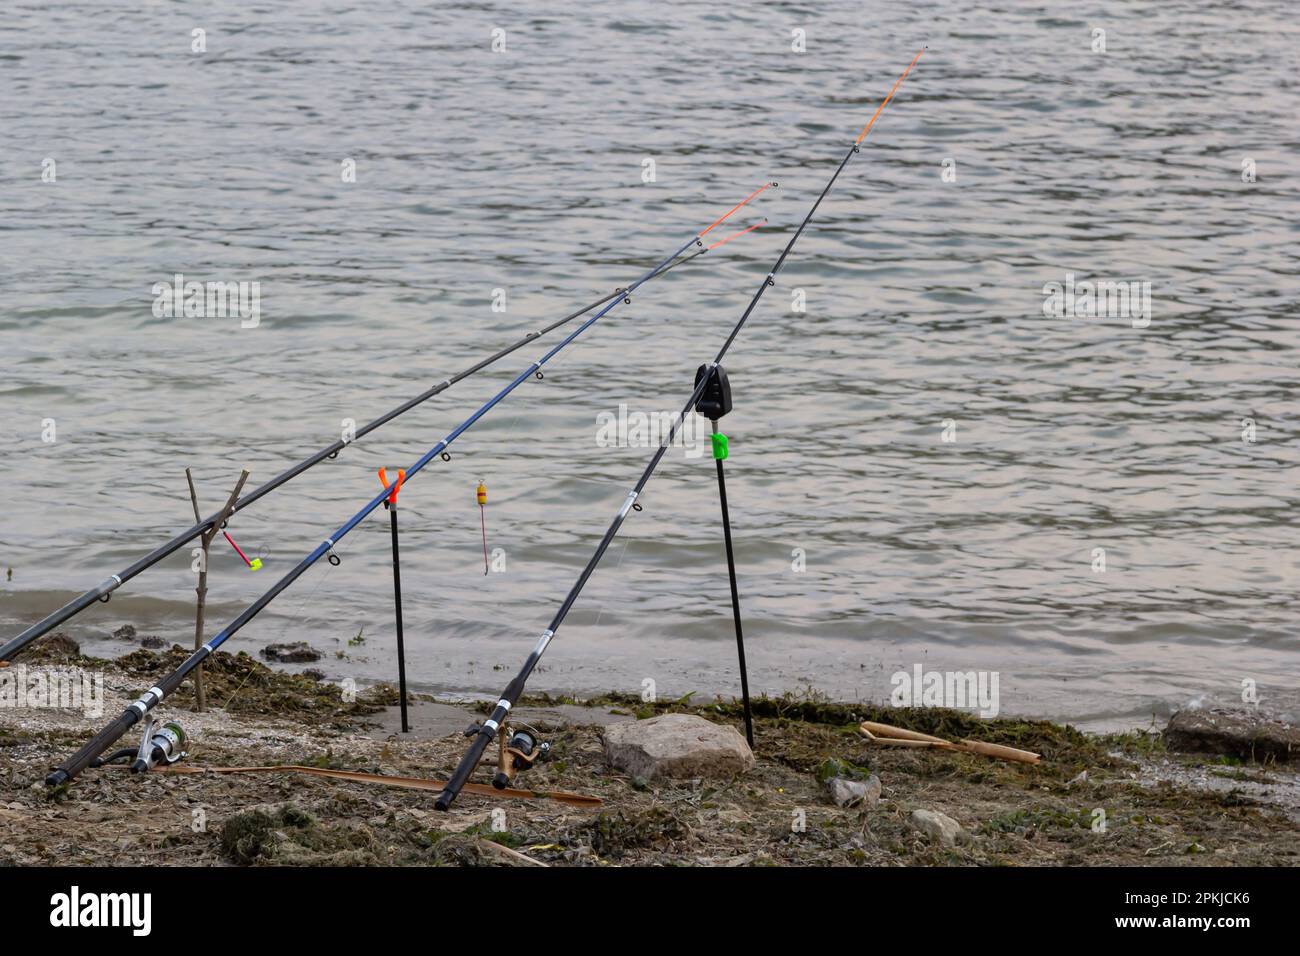 https://c8.alamy.com/compes/2pkjck6/canas-de-pescar-y-equipo-de-pesca-en-la-orilla-del-rio-la-costa-del-lago-cerca-de-la-ola-2pkjck6.jpg